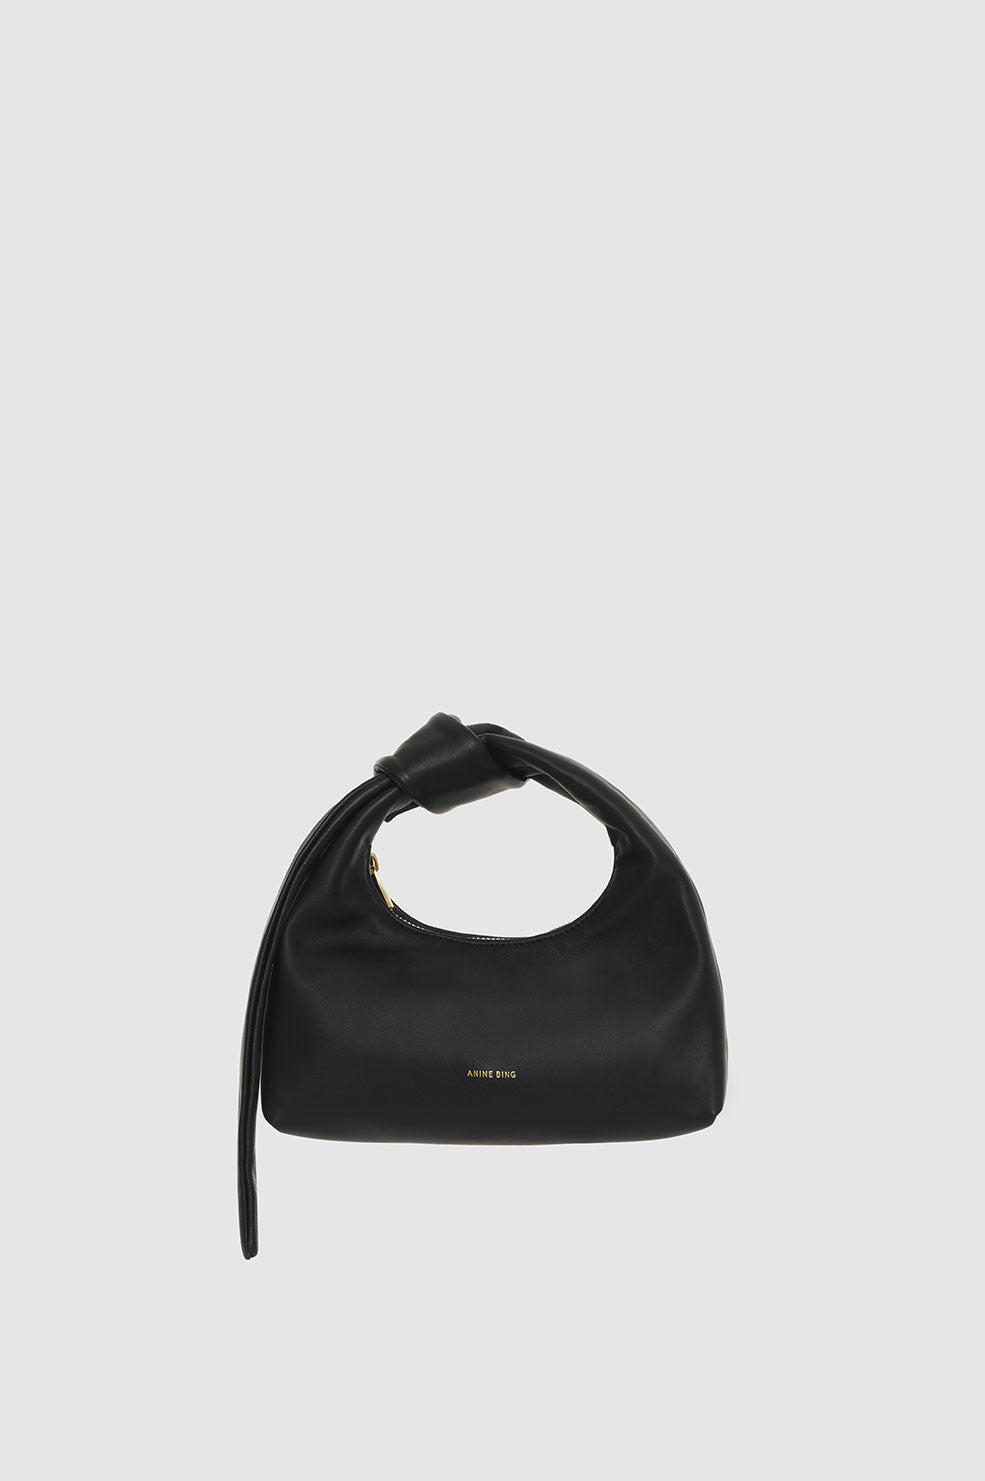 bag mini black